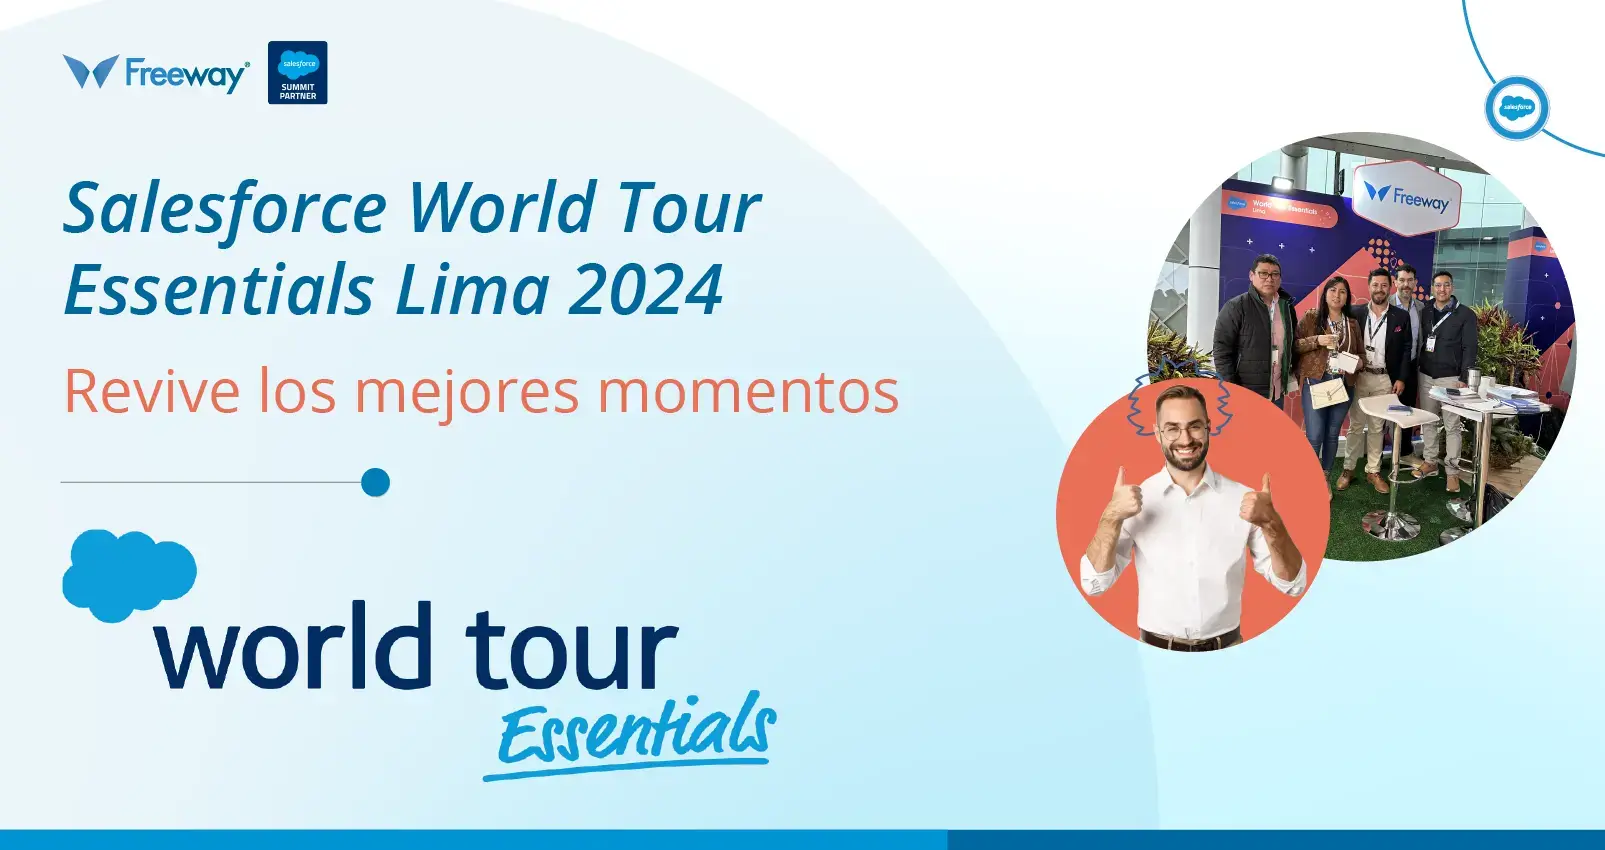 Salesforce World Tour Essentials Lima 2024